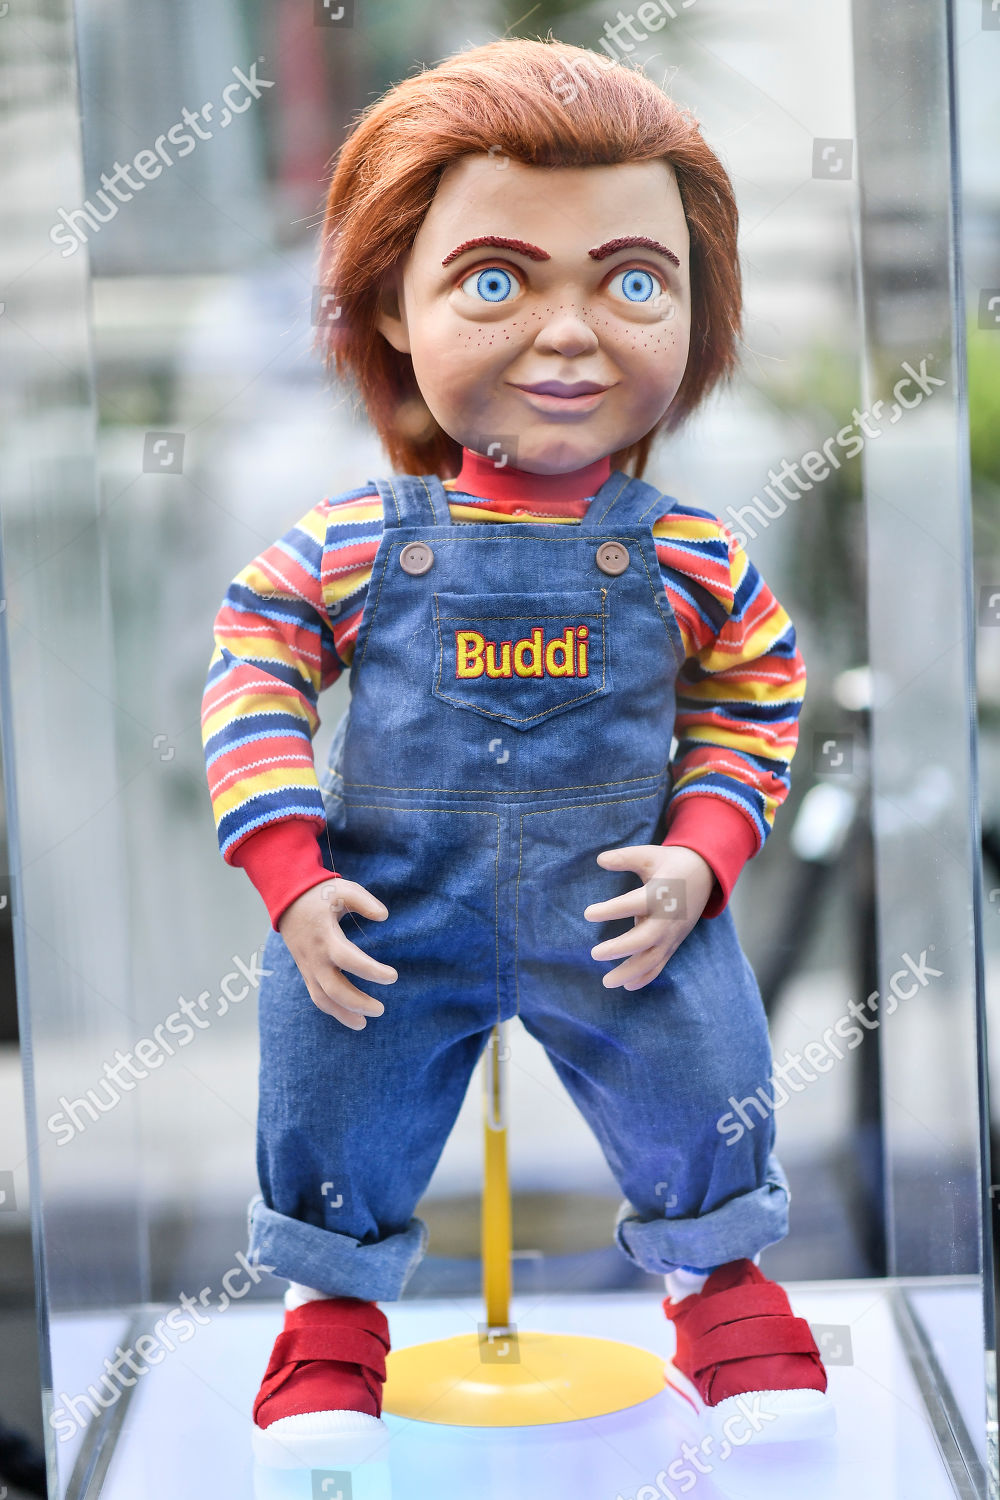 buddi doll for sale